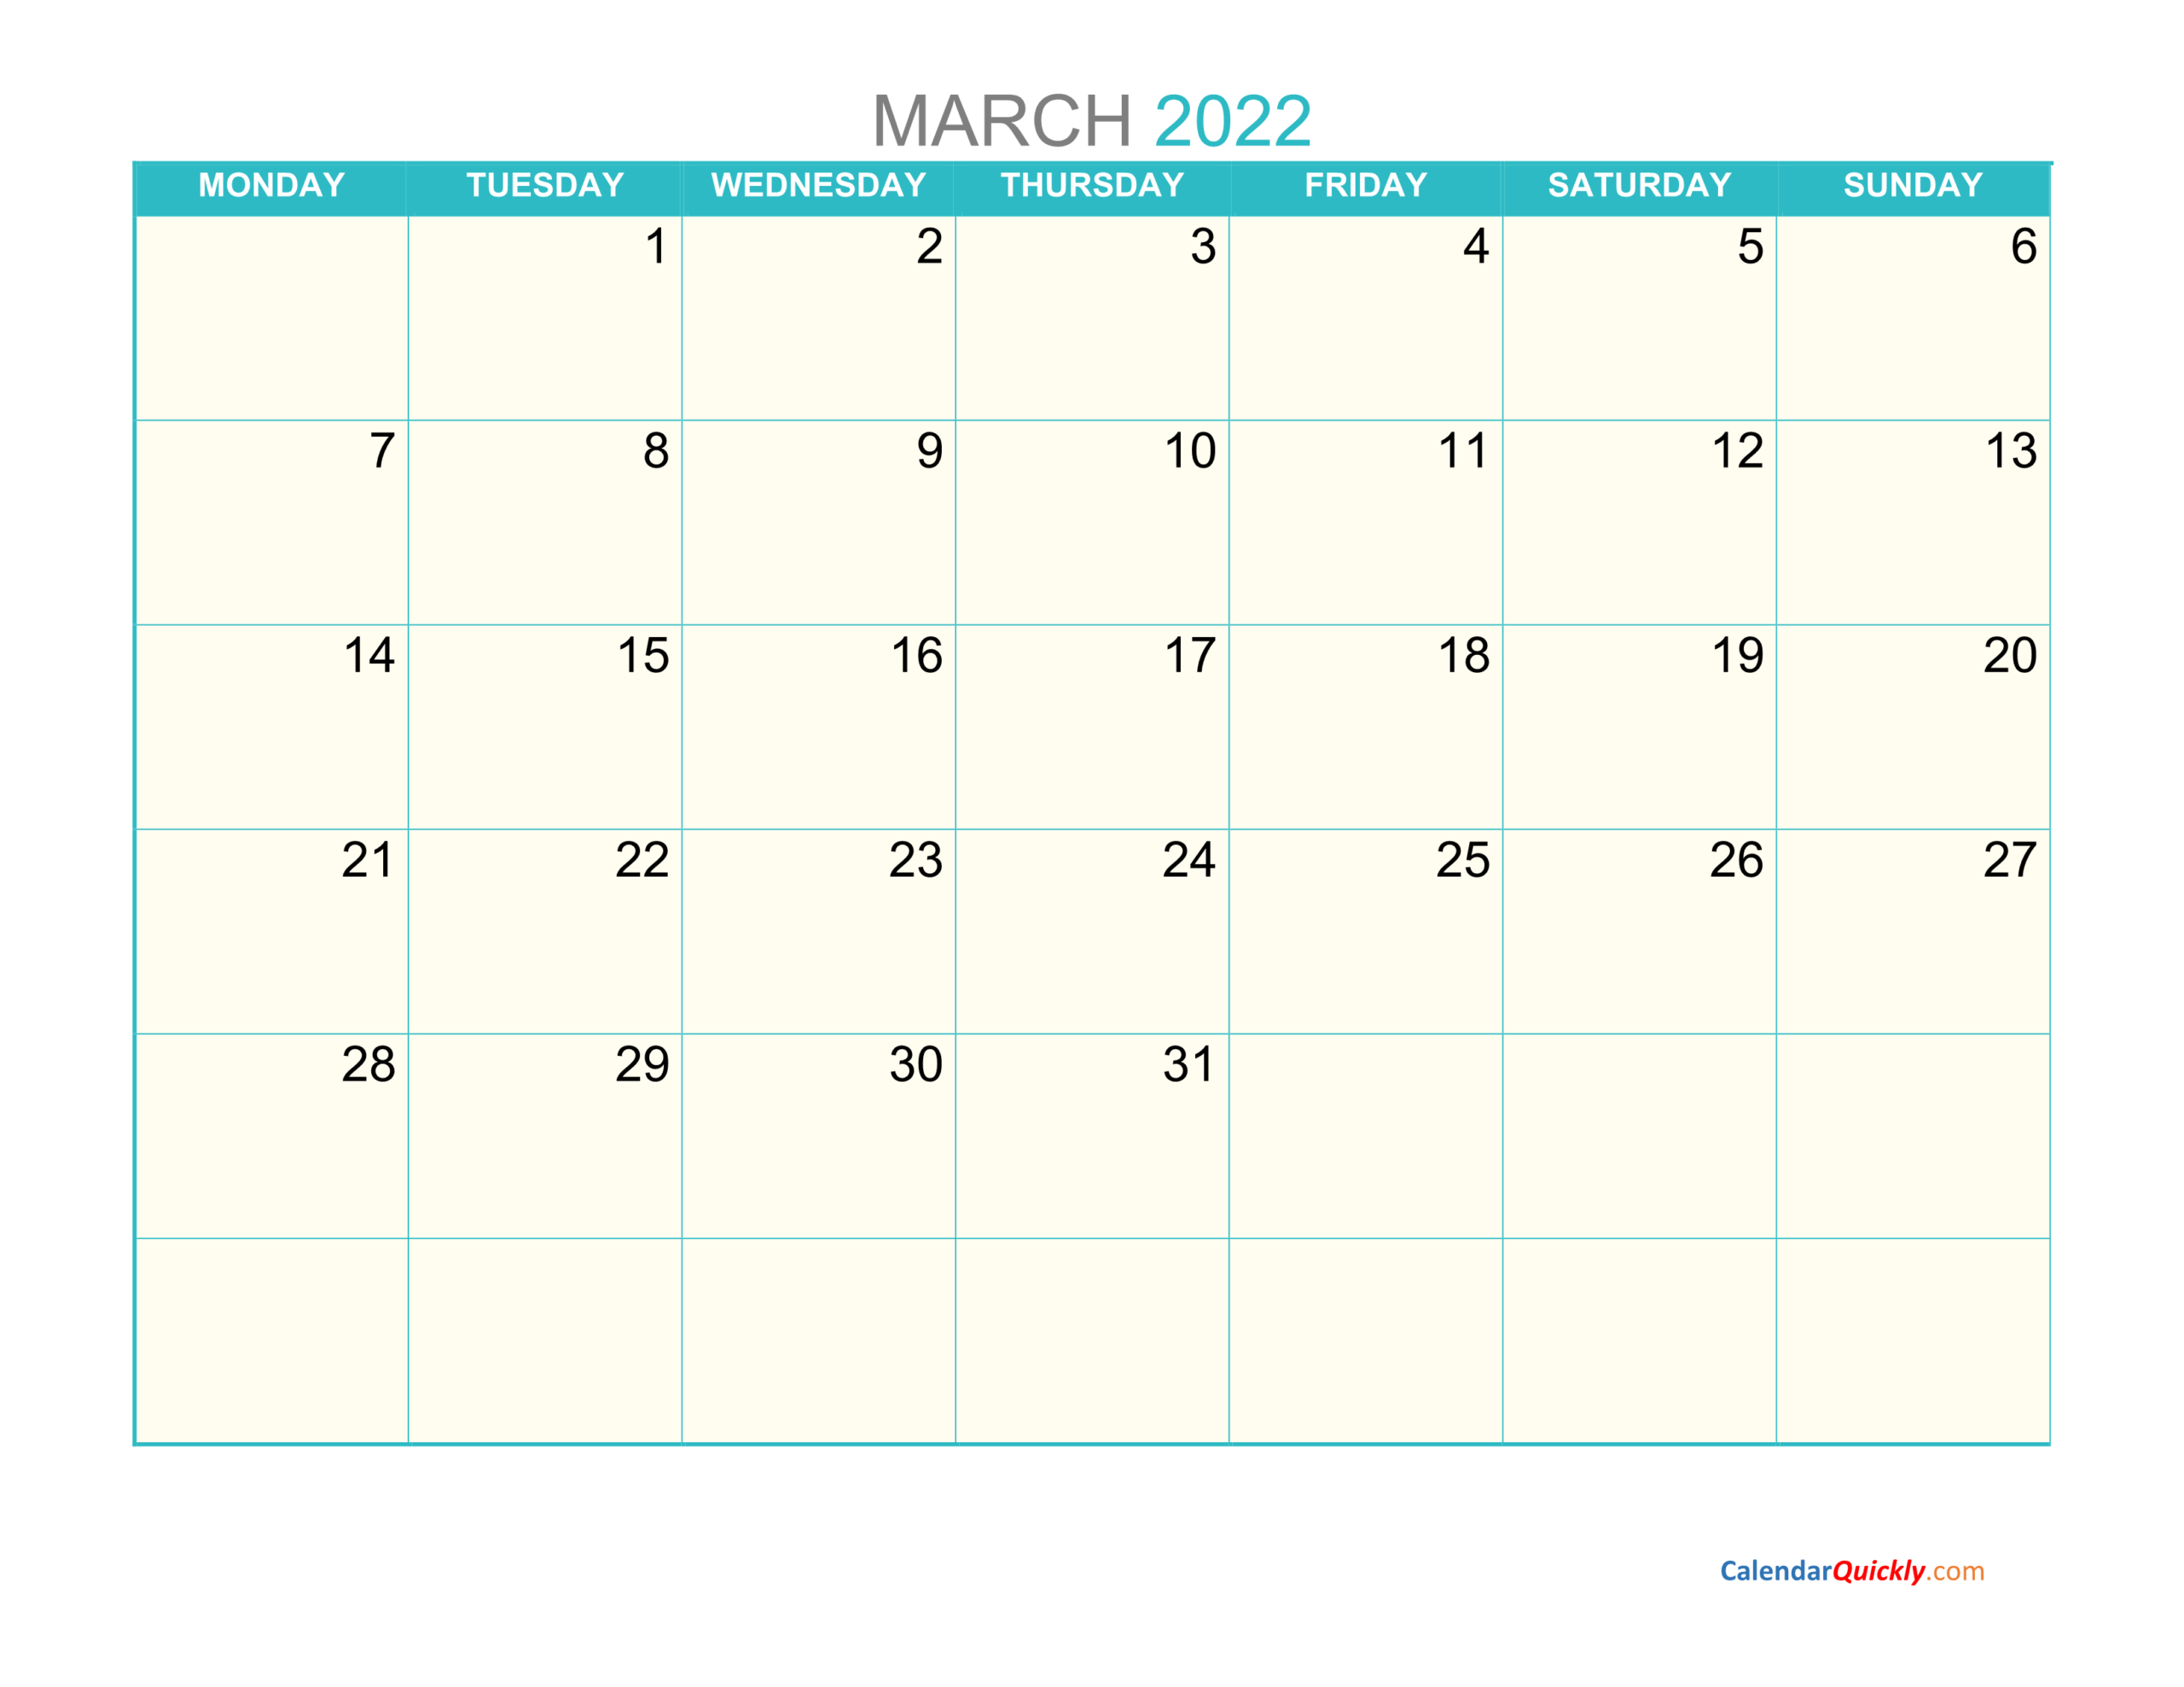 March Monday 2022 Calendar Printable | Calendar Quickly  Year Calendar April 2022 To March 2022